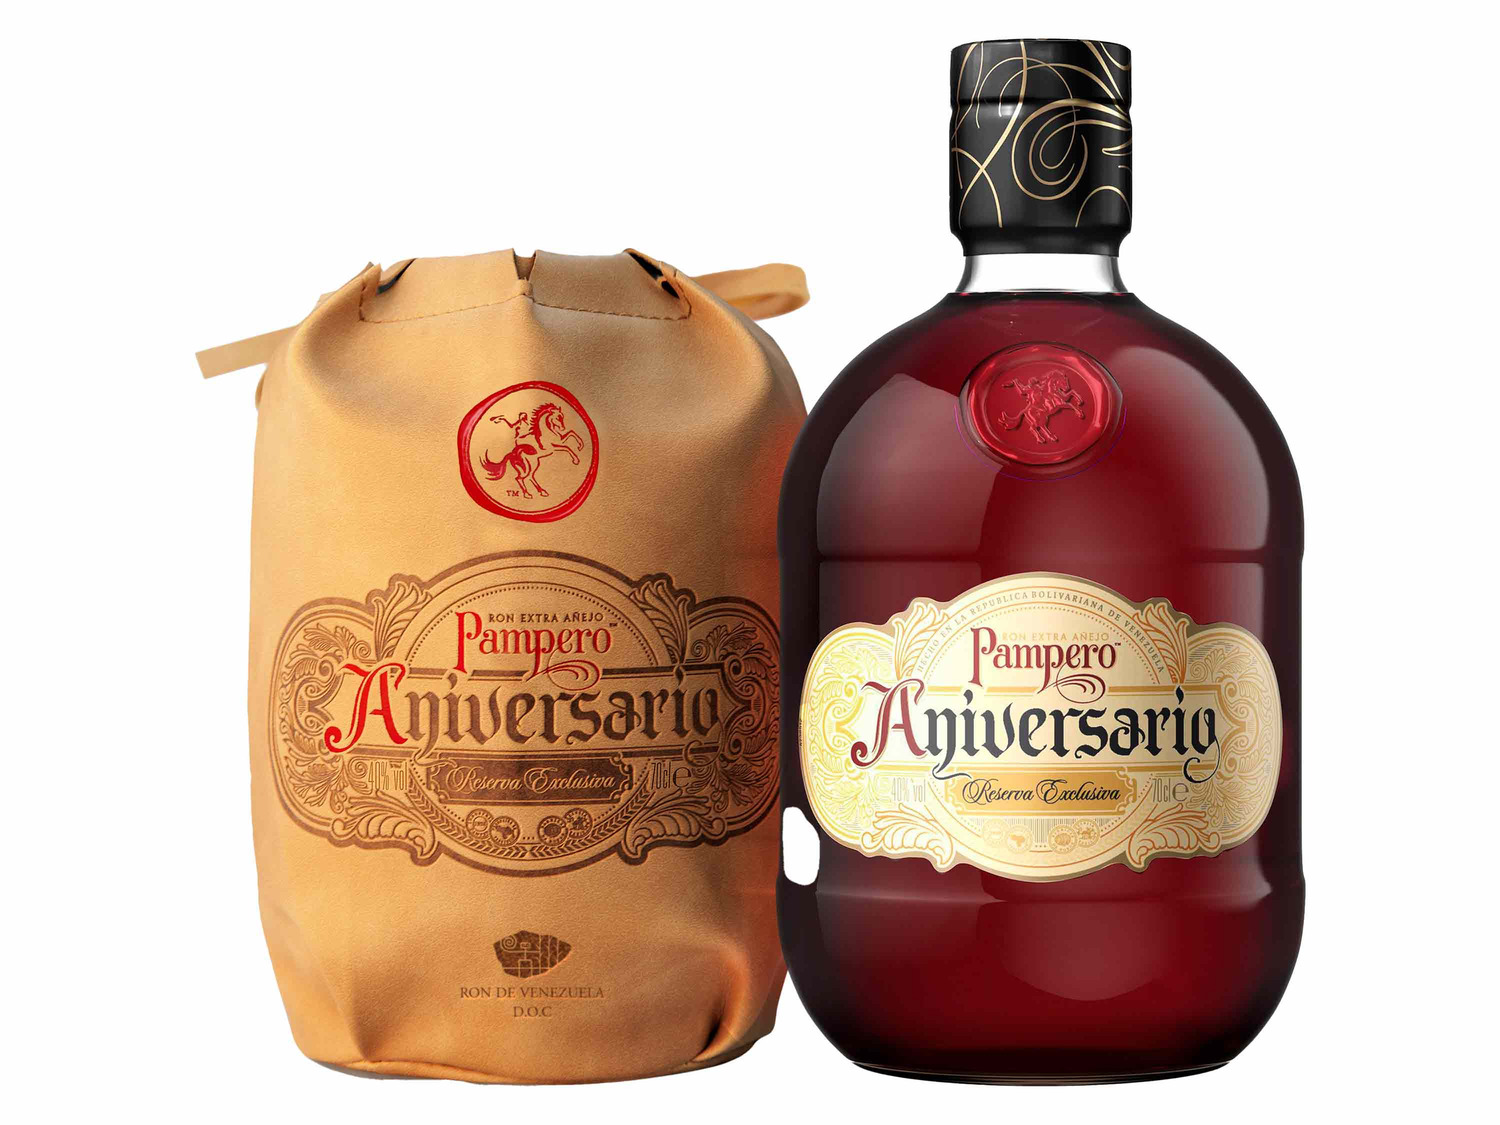 PAMPERO Aniversario Reserva Añejo Exclusiva in Led… Rum